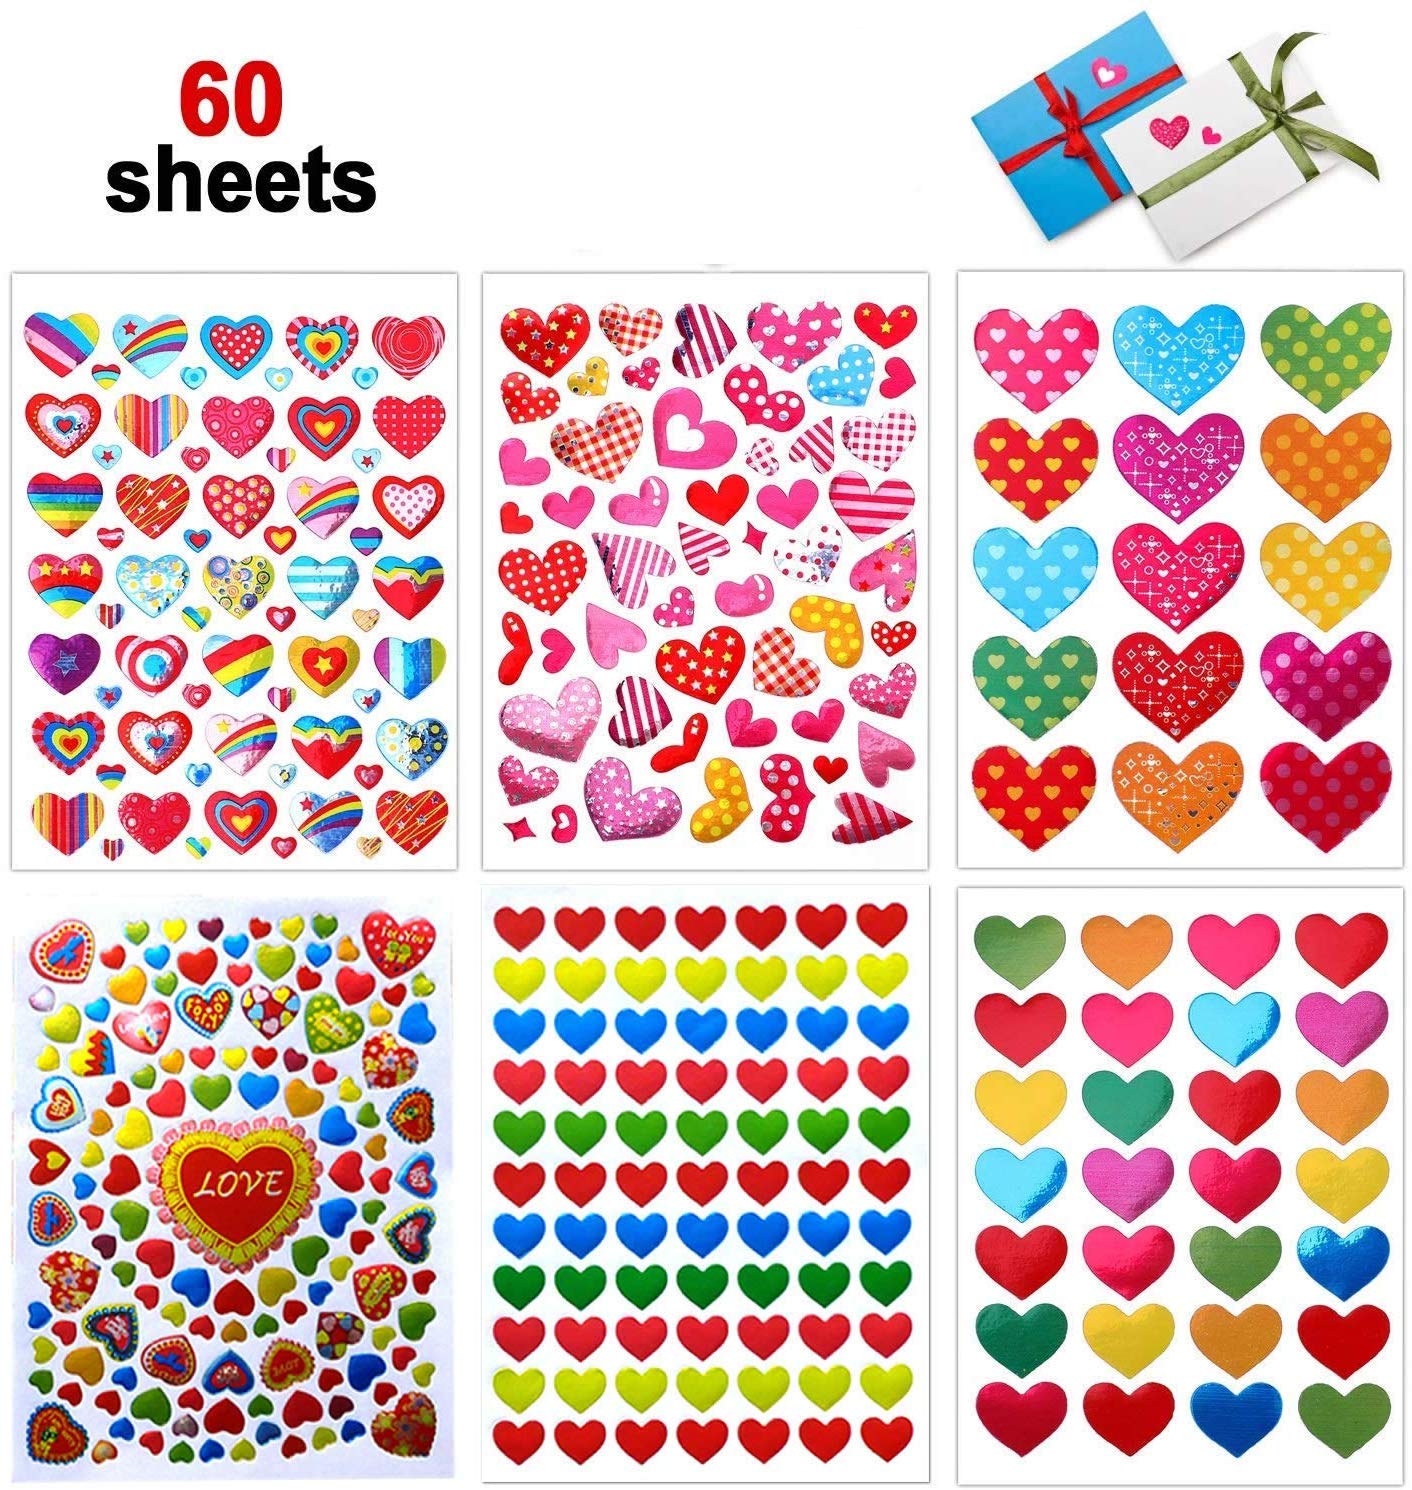 Illustrazione di adesivi colorati adesivi adesivi colorati per